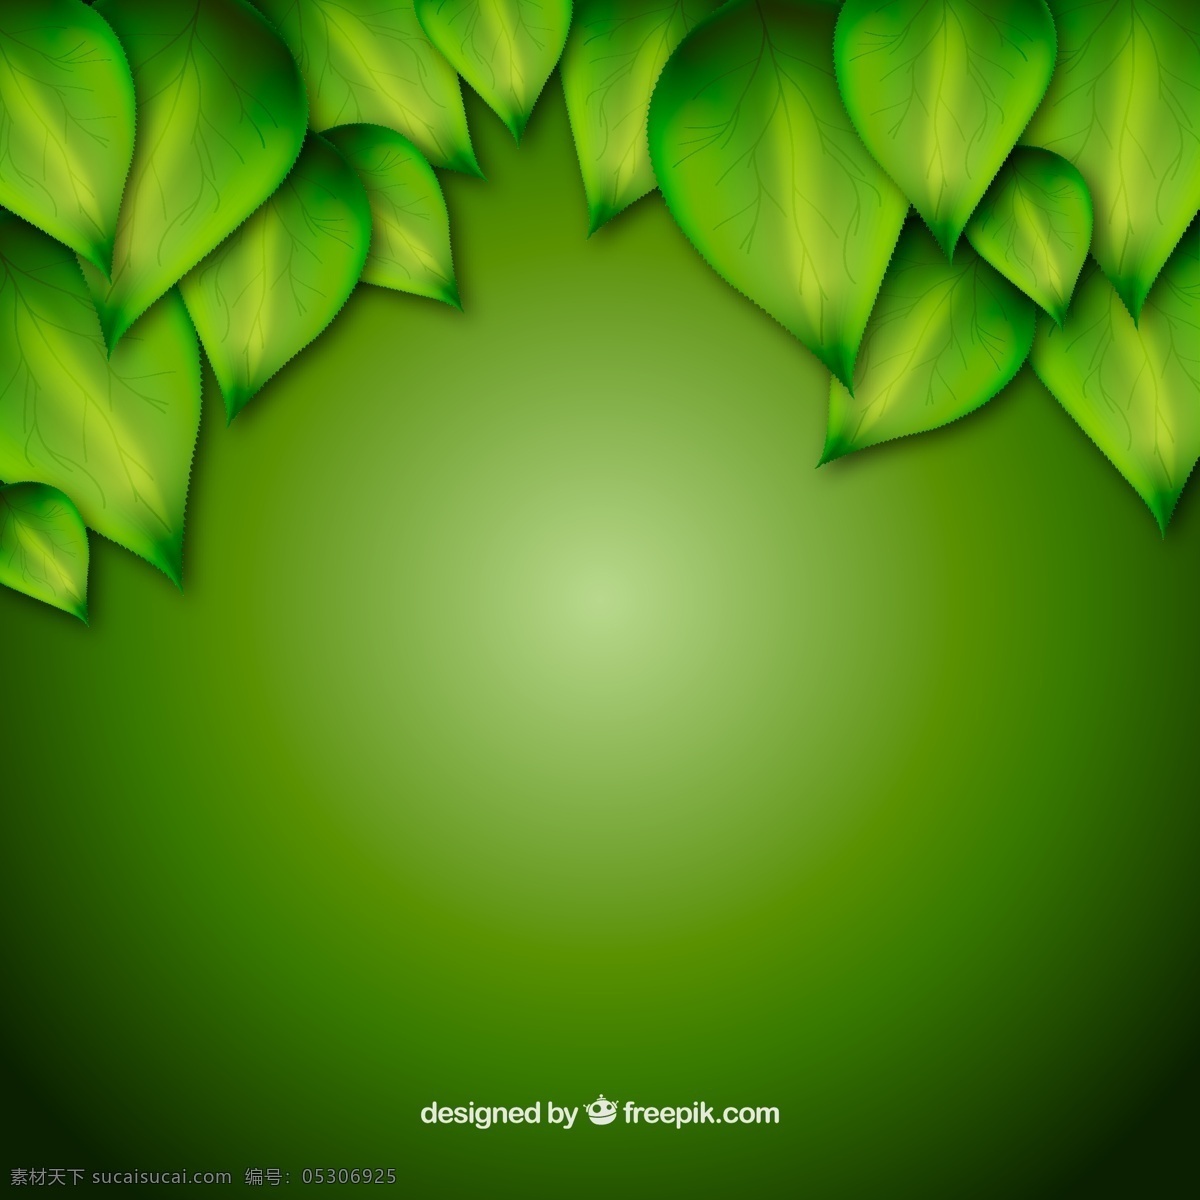 精美 绿叶 装饰 背景 矢量图 生命力 绿色